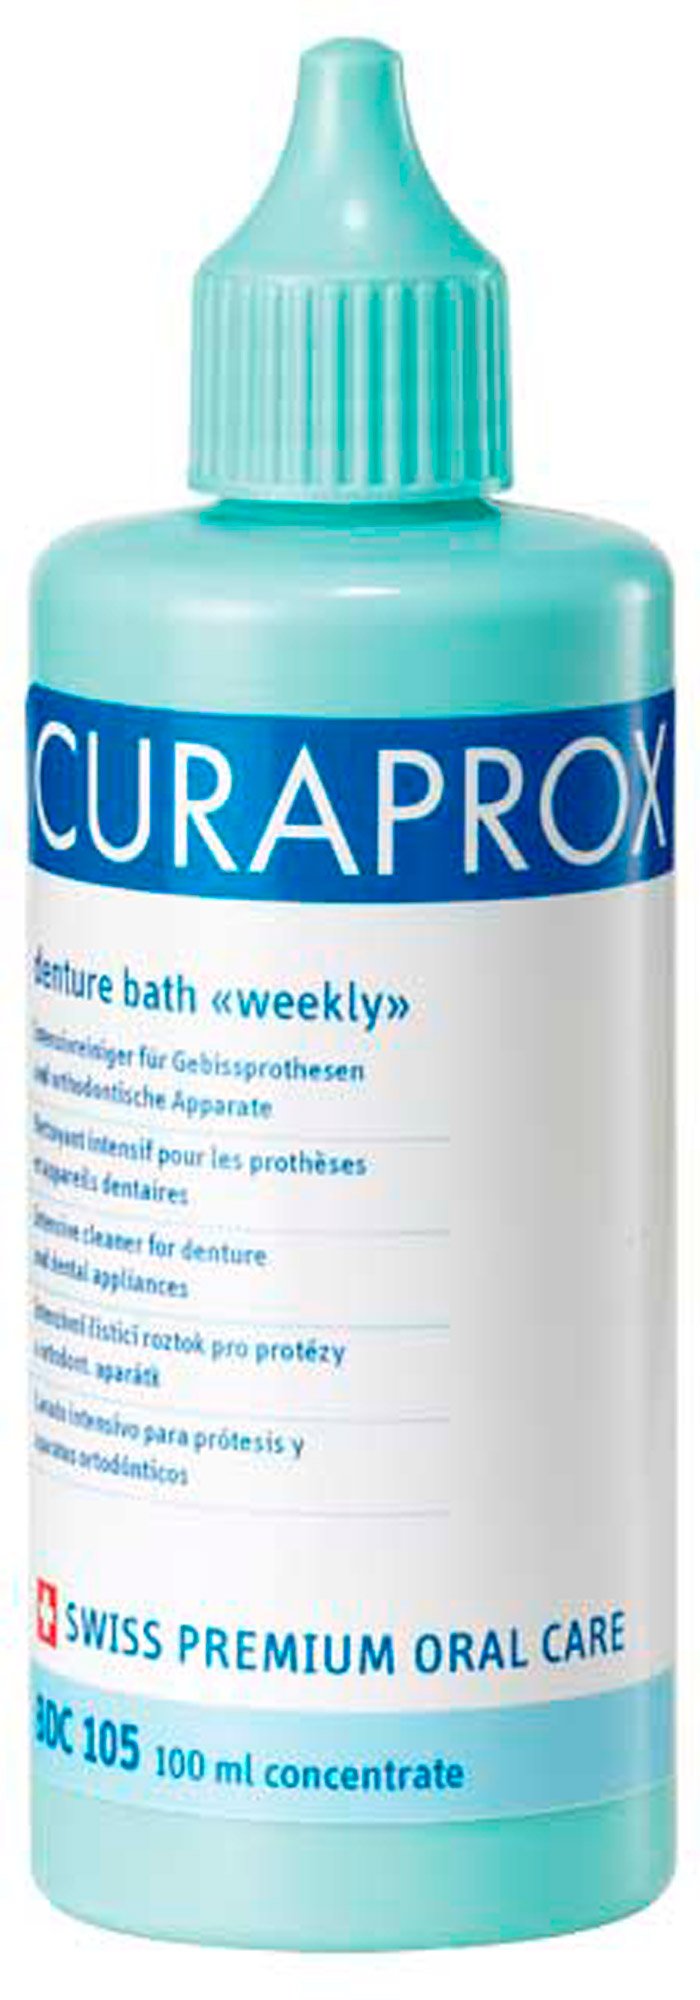 Жидкость weekly для еженедельного ухода за протезами Curaprox BDC 105, Curaden International  - купить со скидкой